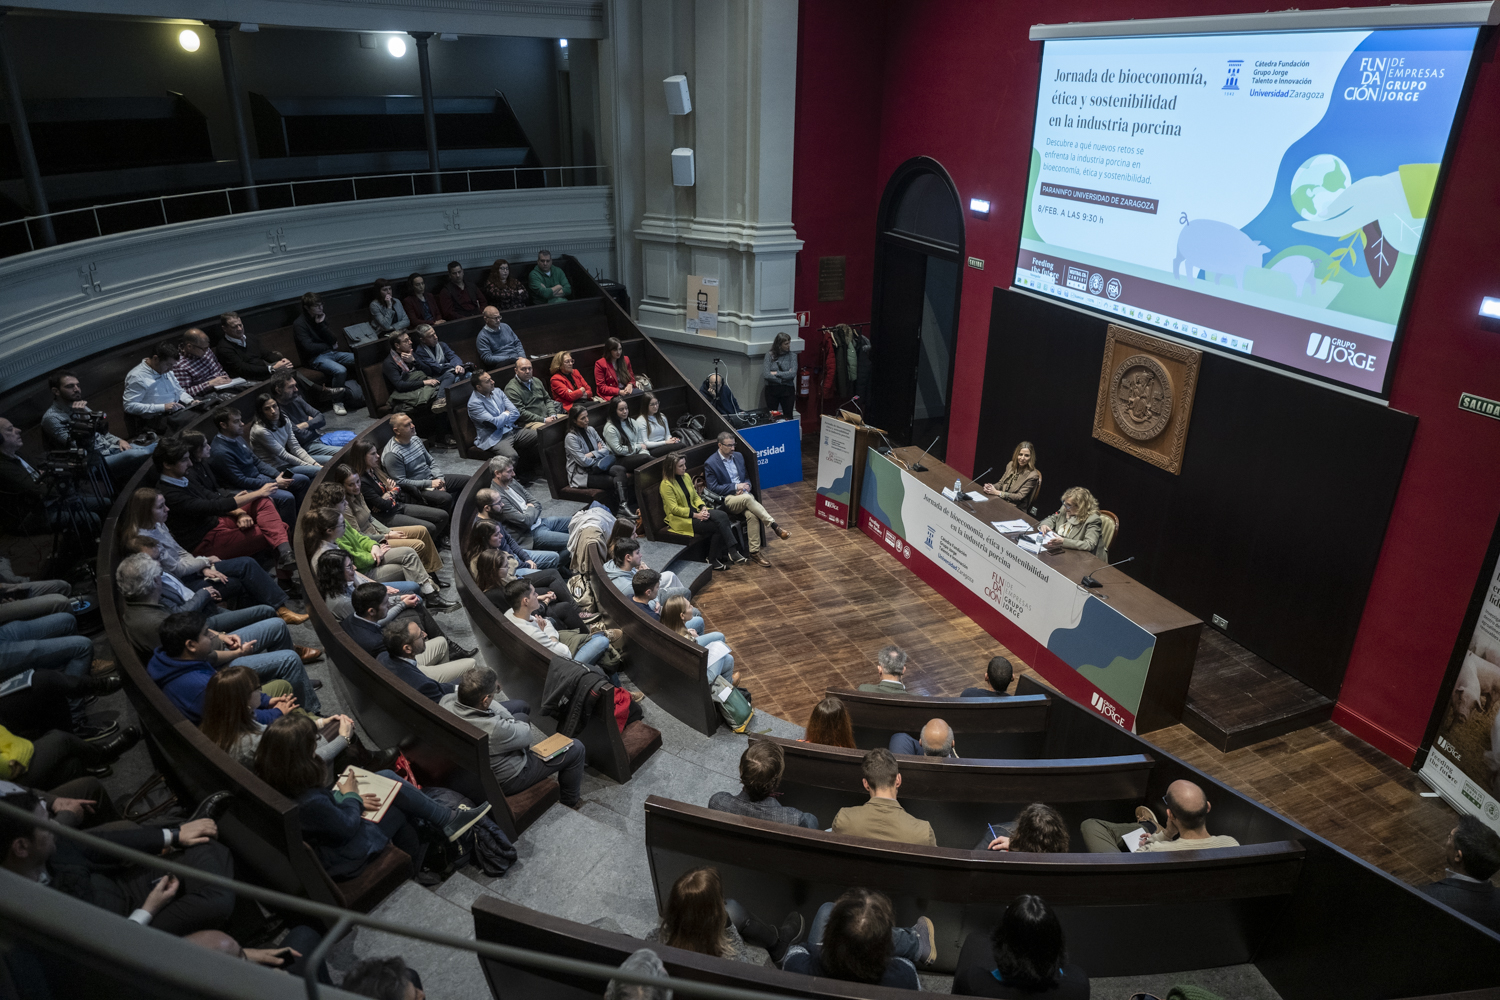 Jornada de bioeconomía, ética y sostenibilidad en la industria porcina en la Universidad de Zaragoza